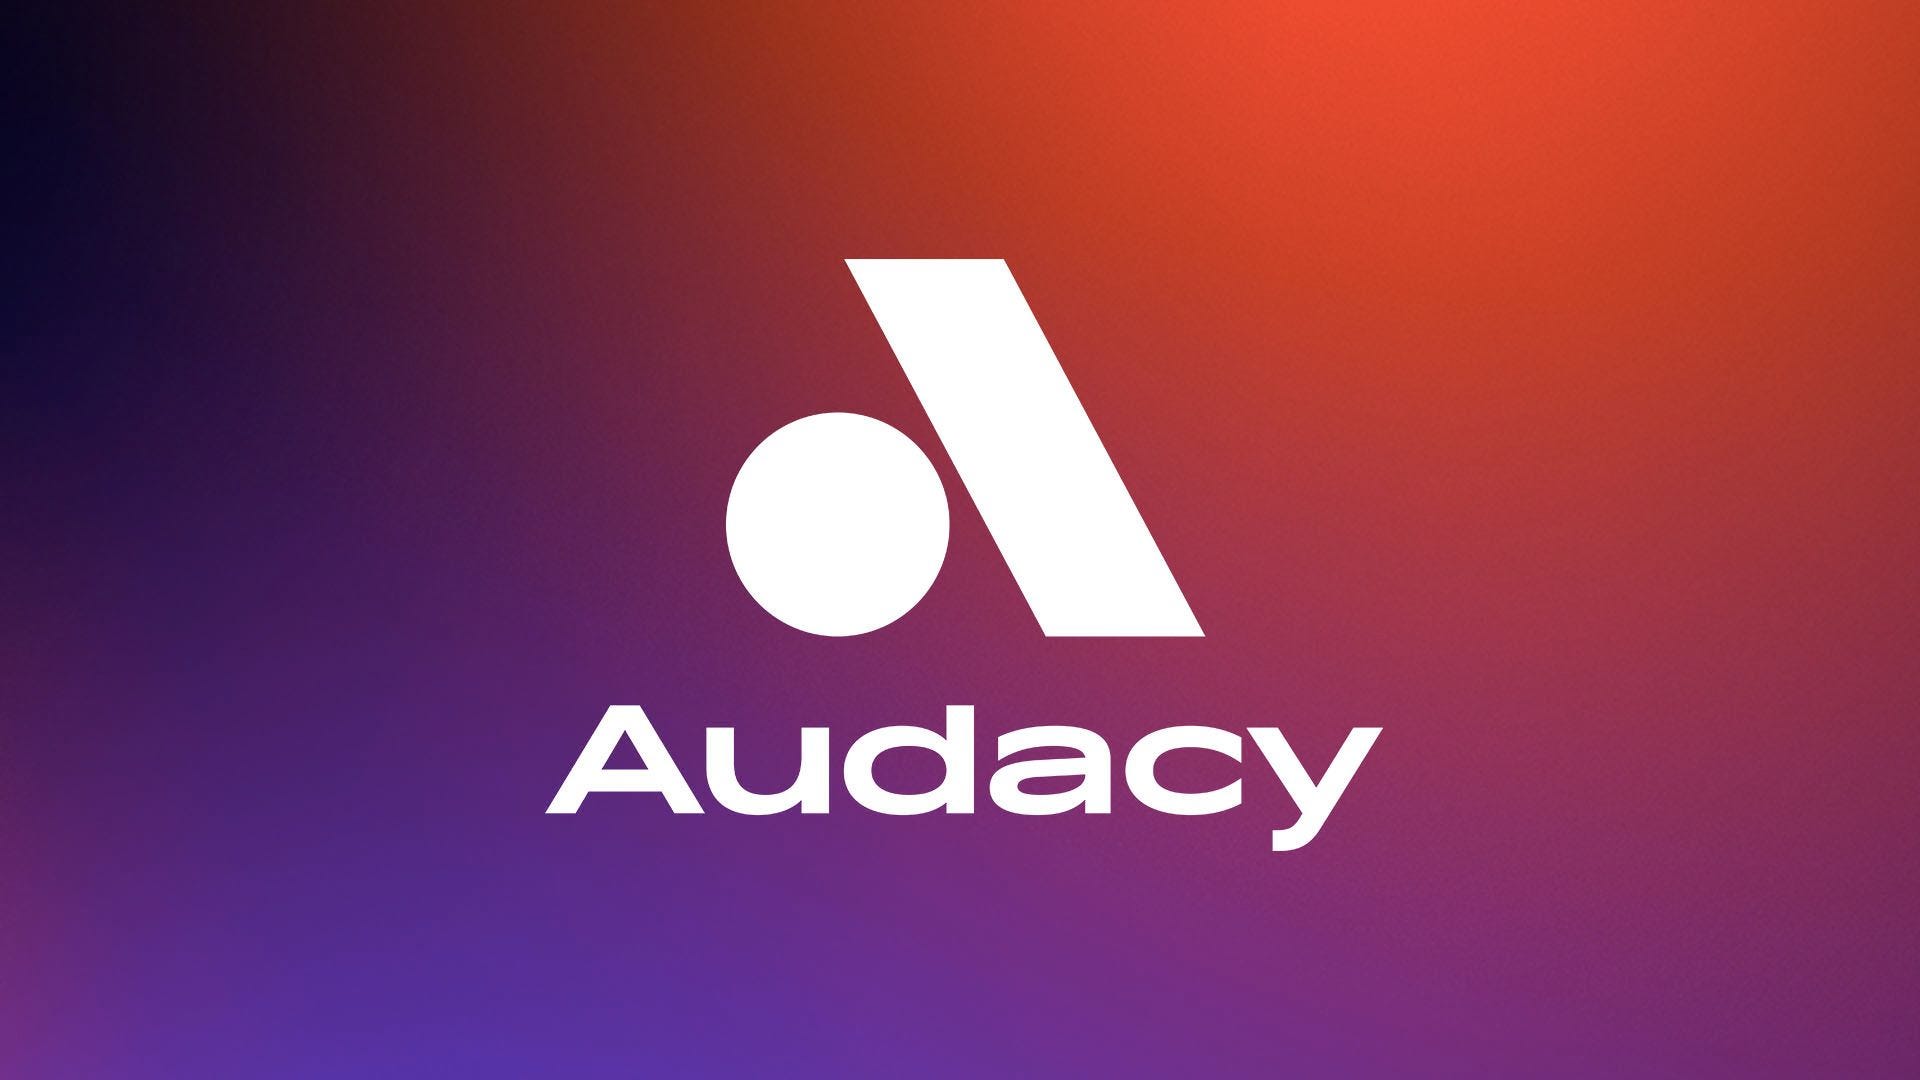 www.audacy.com